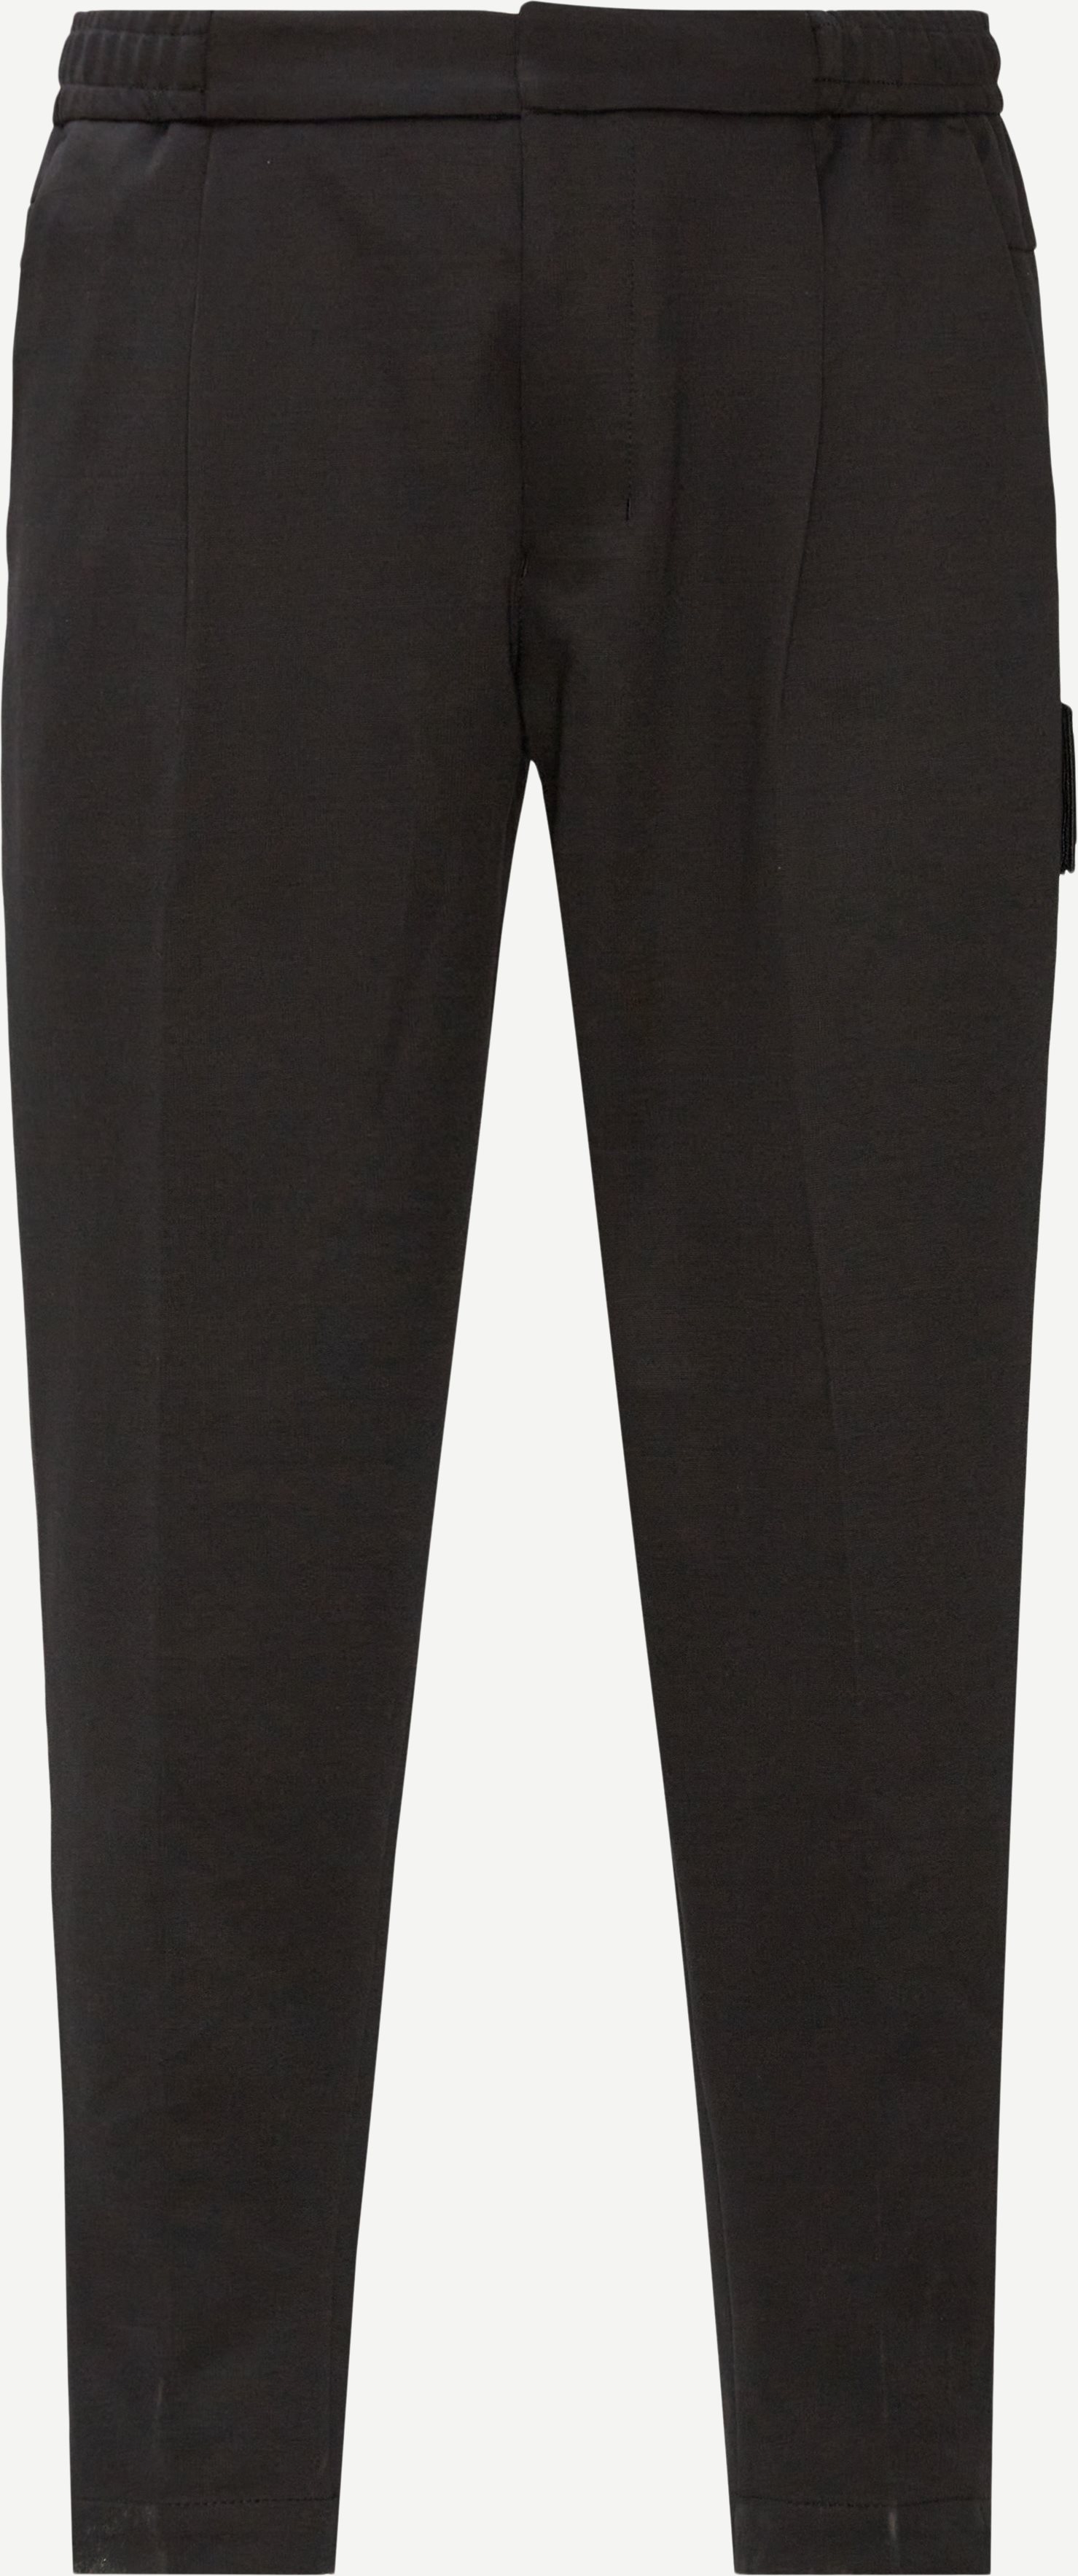 T-Kendo Sweatpants - Bukser - Tapered fit - Sort